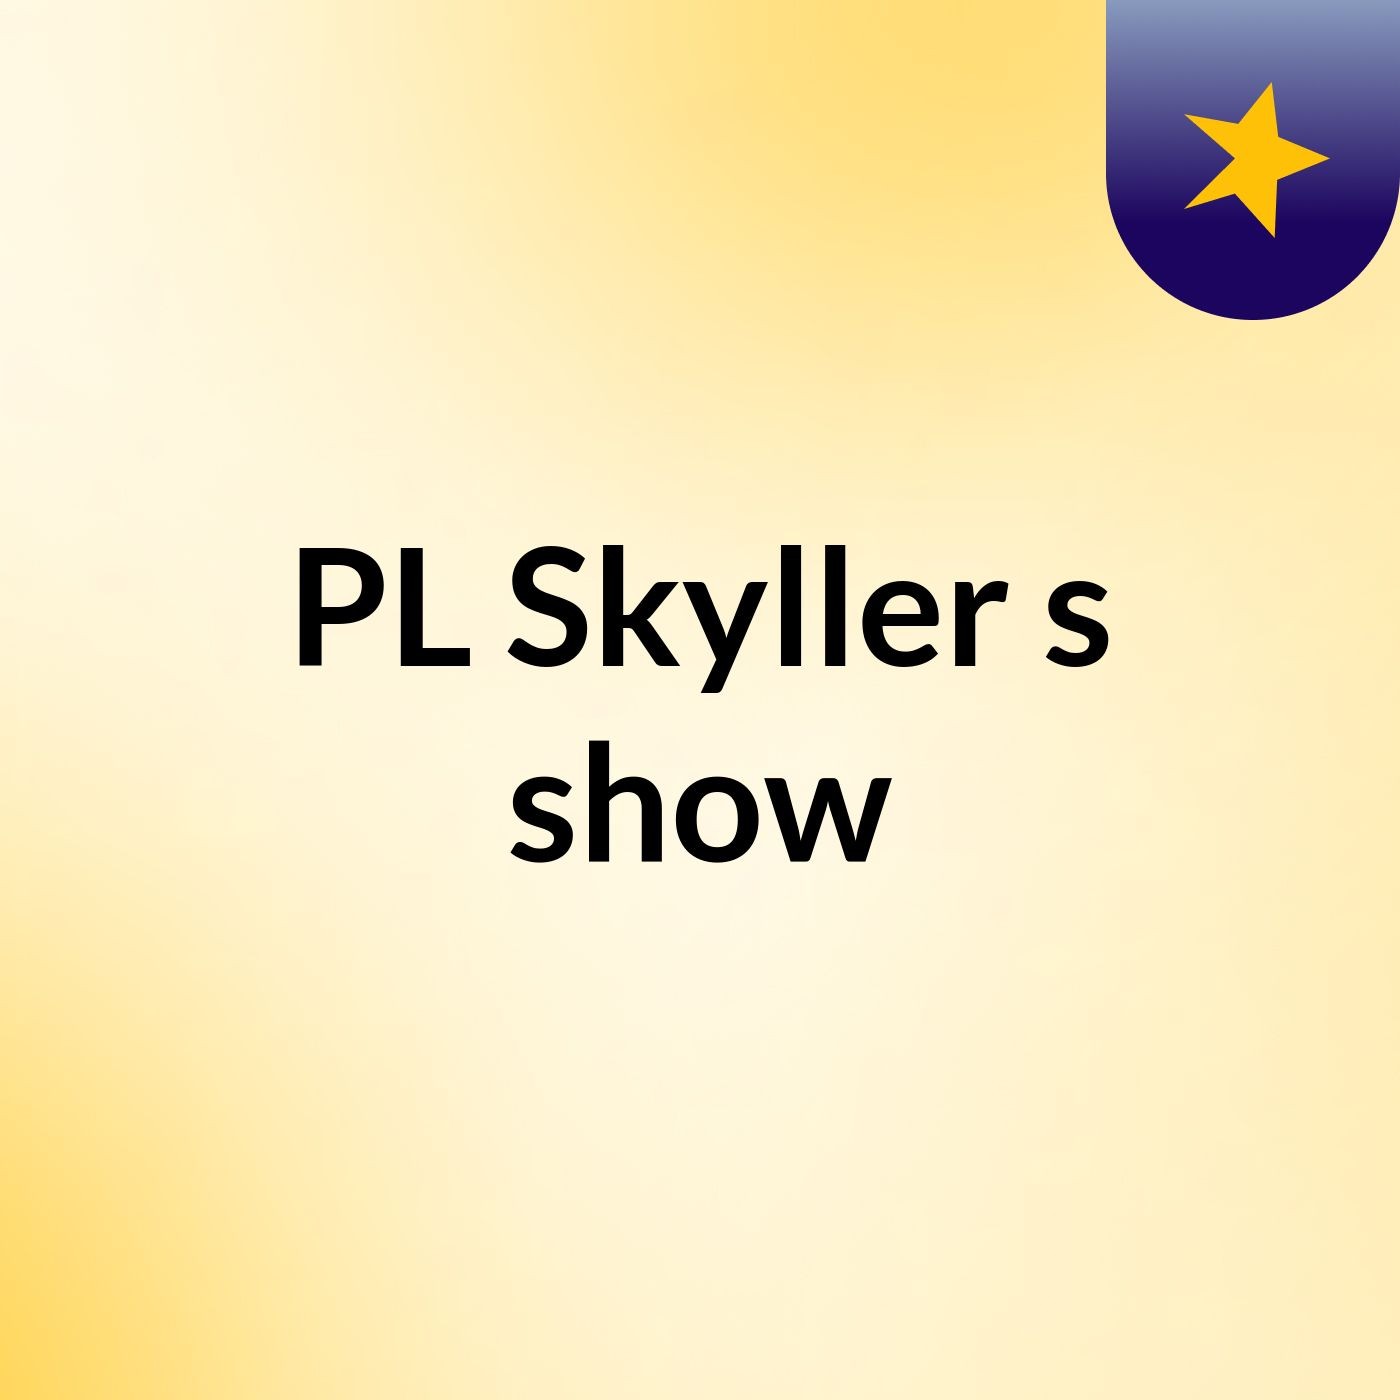 PL Skyller's show